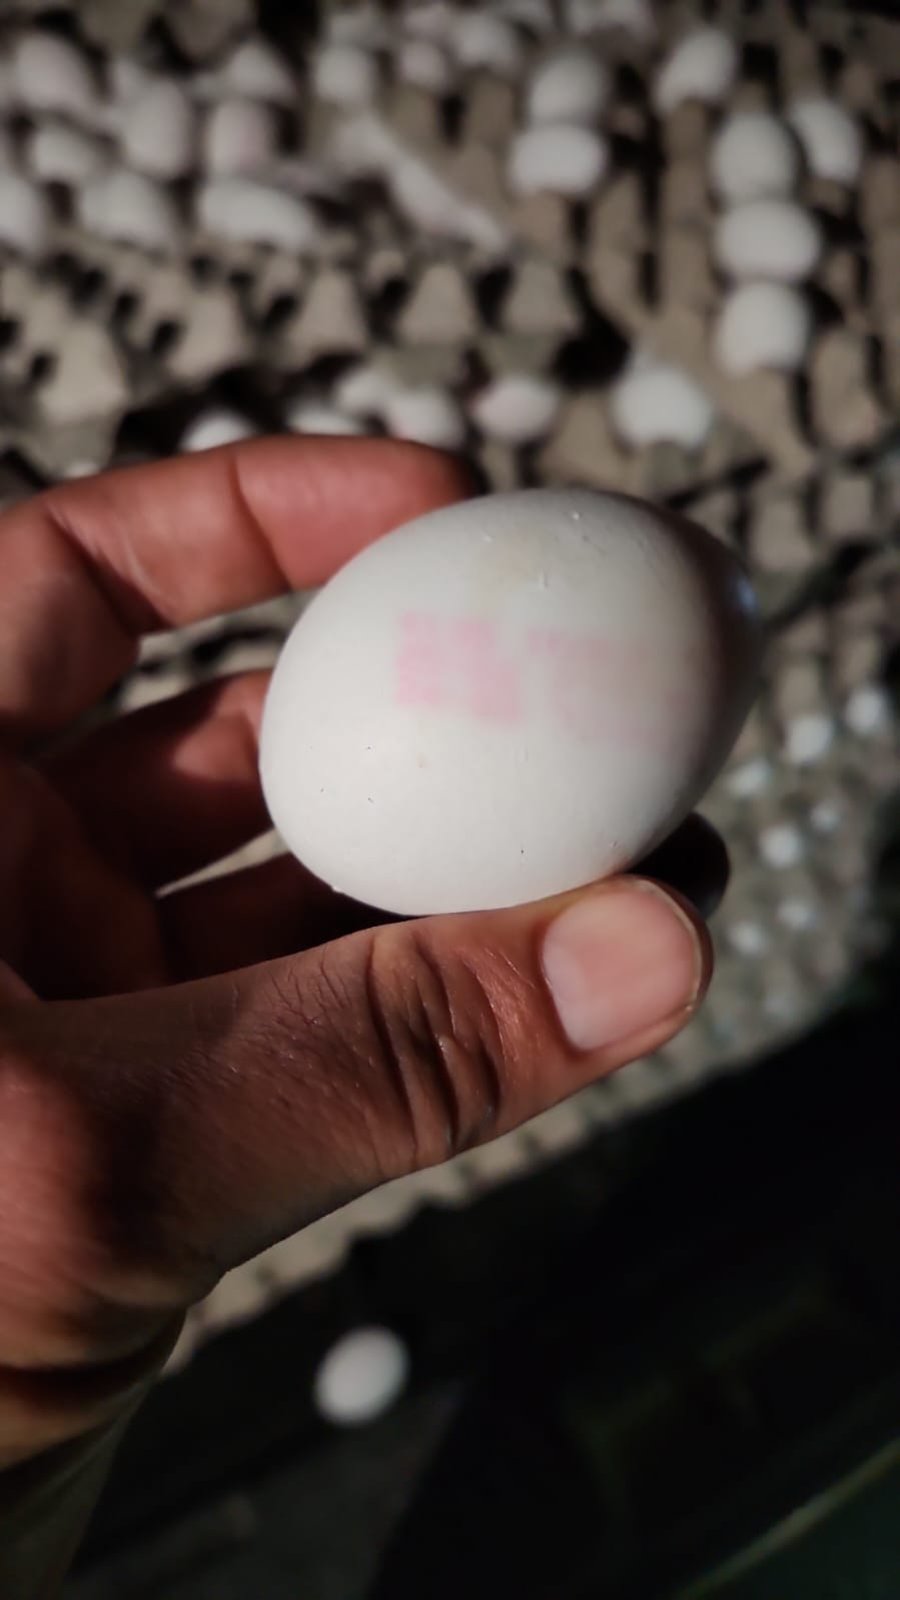 תושב נתיבות נתפס עם 12 אלף ביצים מוברחות